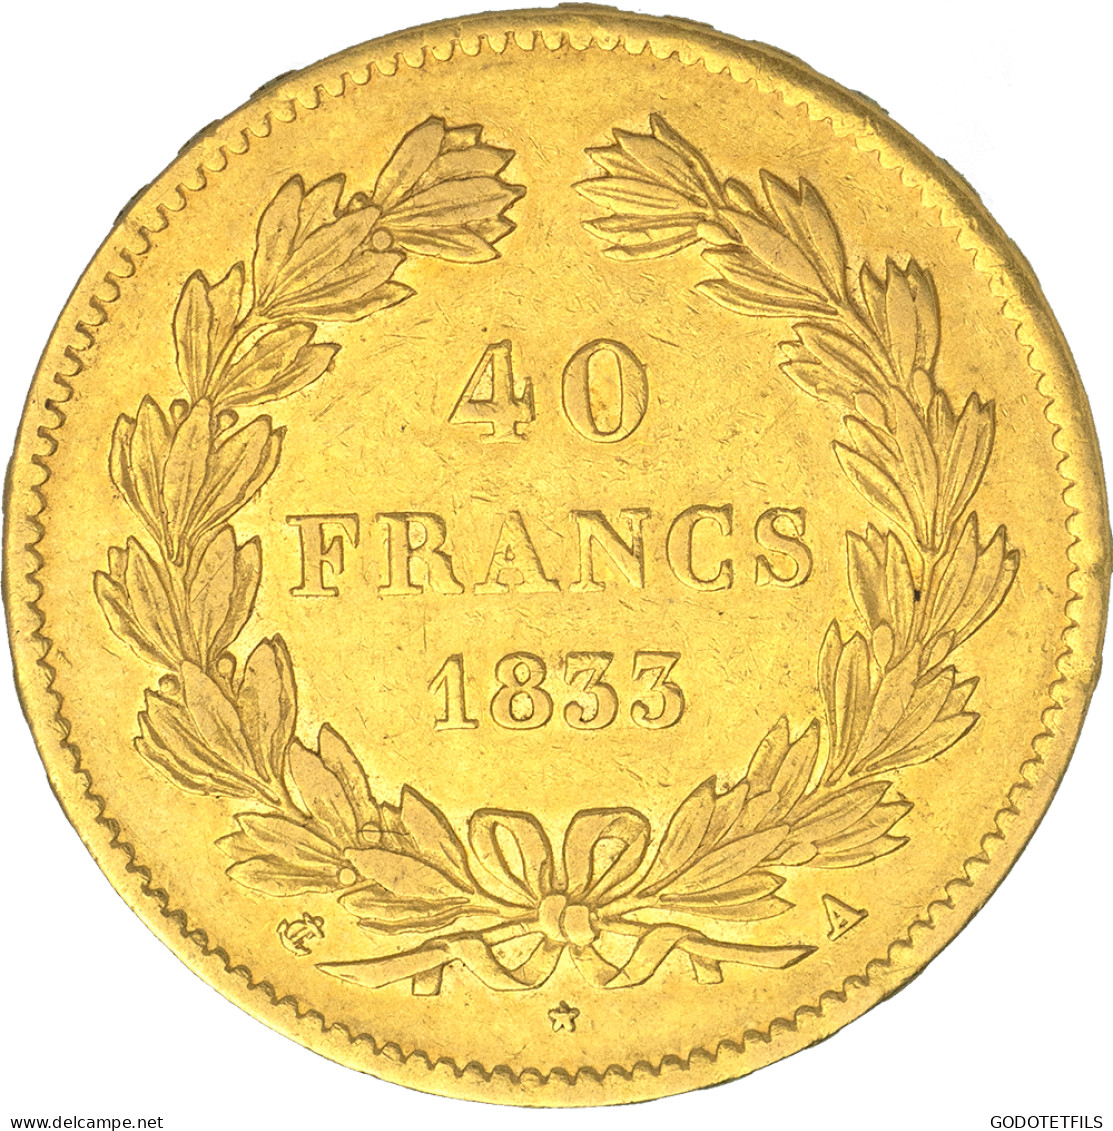 Louis-Philippe-40 Francs 1833 Paris - 40 Francs (gold)